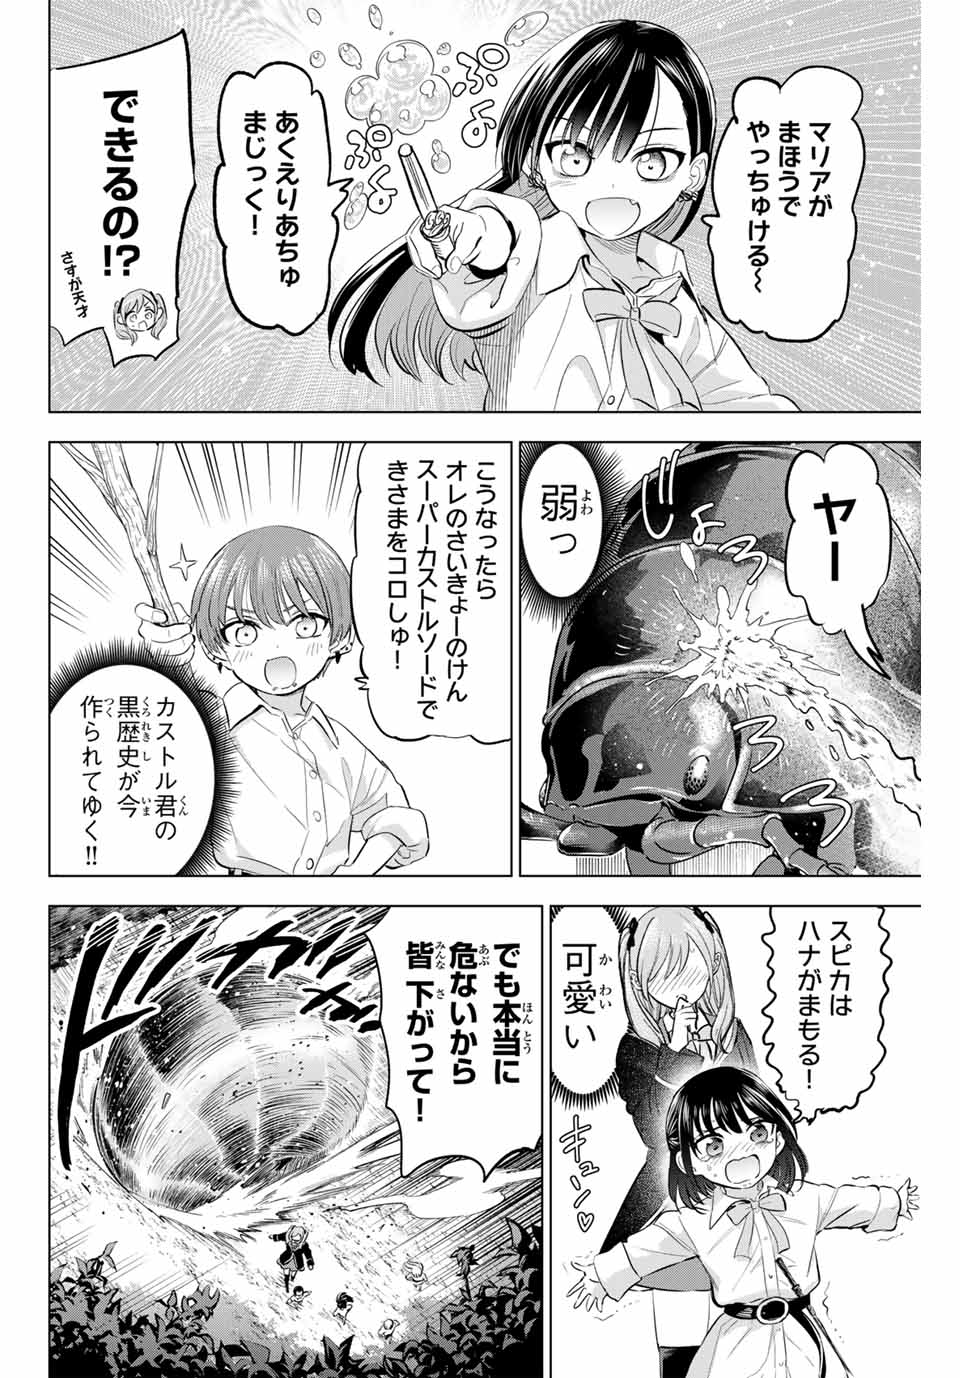 Kuroneko to Majo no Kyoushitsu - Chapter 63 - Page 14